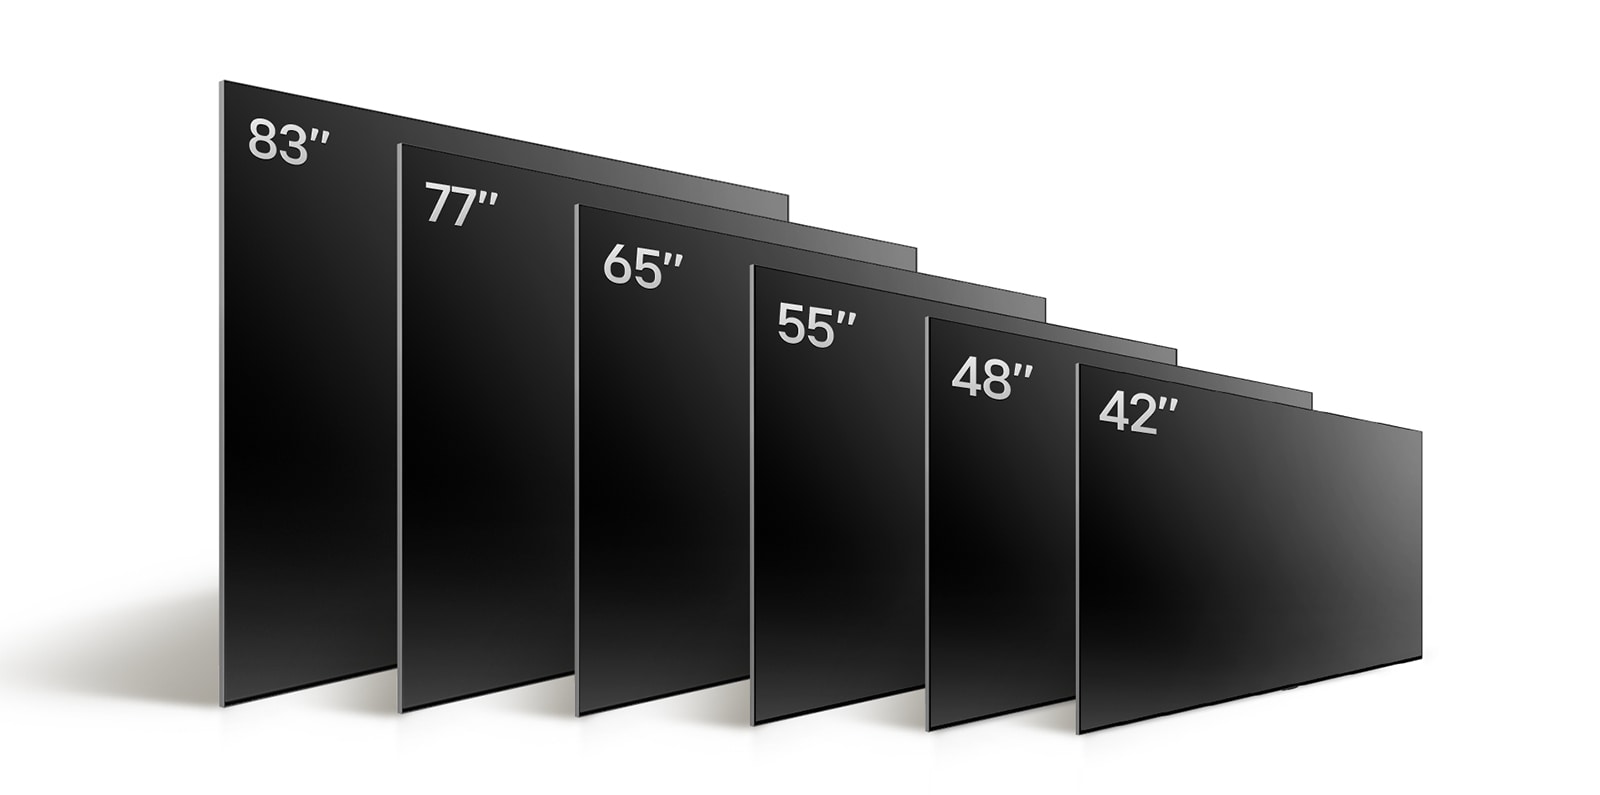 Сравнение различных размеров телевизора LG OLED TV, OLED C4, где демонстрируются телевизоры OLED C4 42", OLED 48", OLED C4 55", OLED C4 65", OLED C4 77" и OLED C4 83".